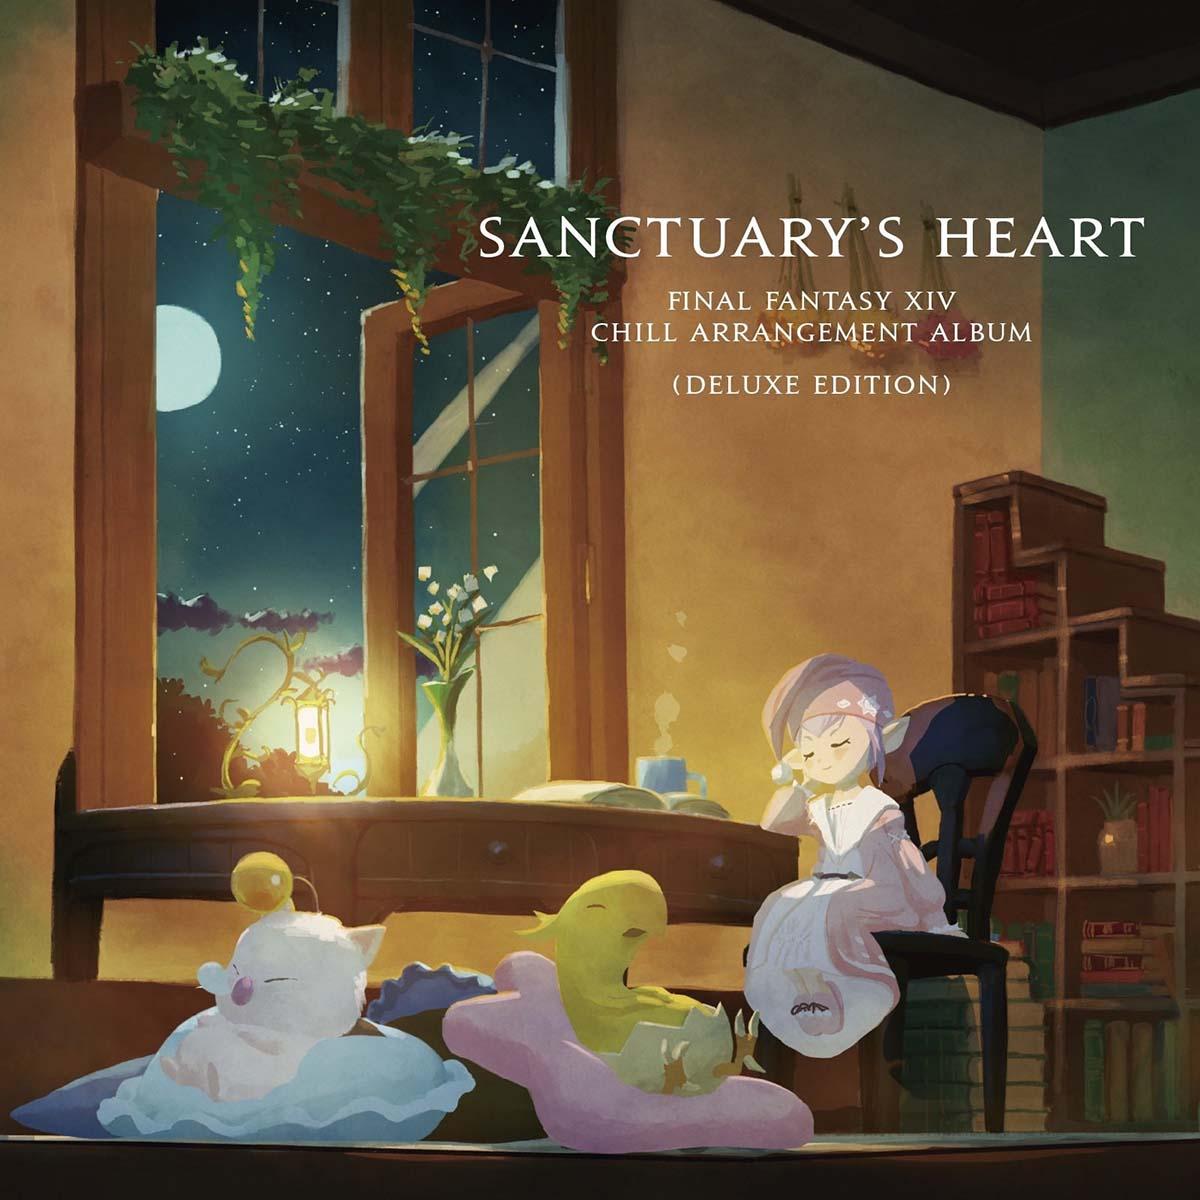 Final Fantasy XIV Chill Arrangement Album: Sanctuary's Heart (Deluxe Edition)